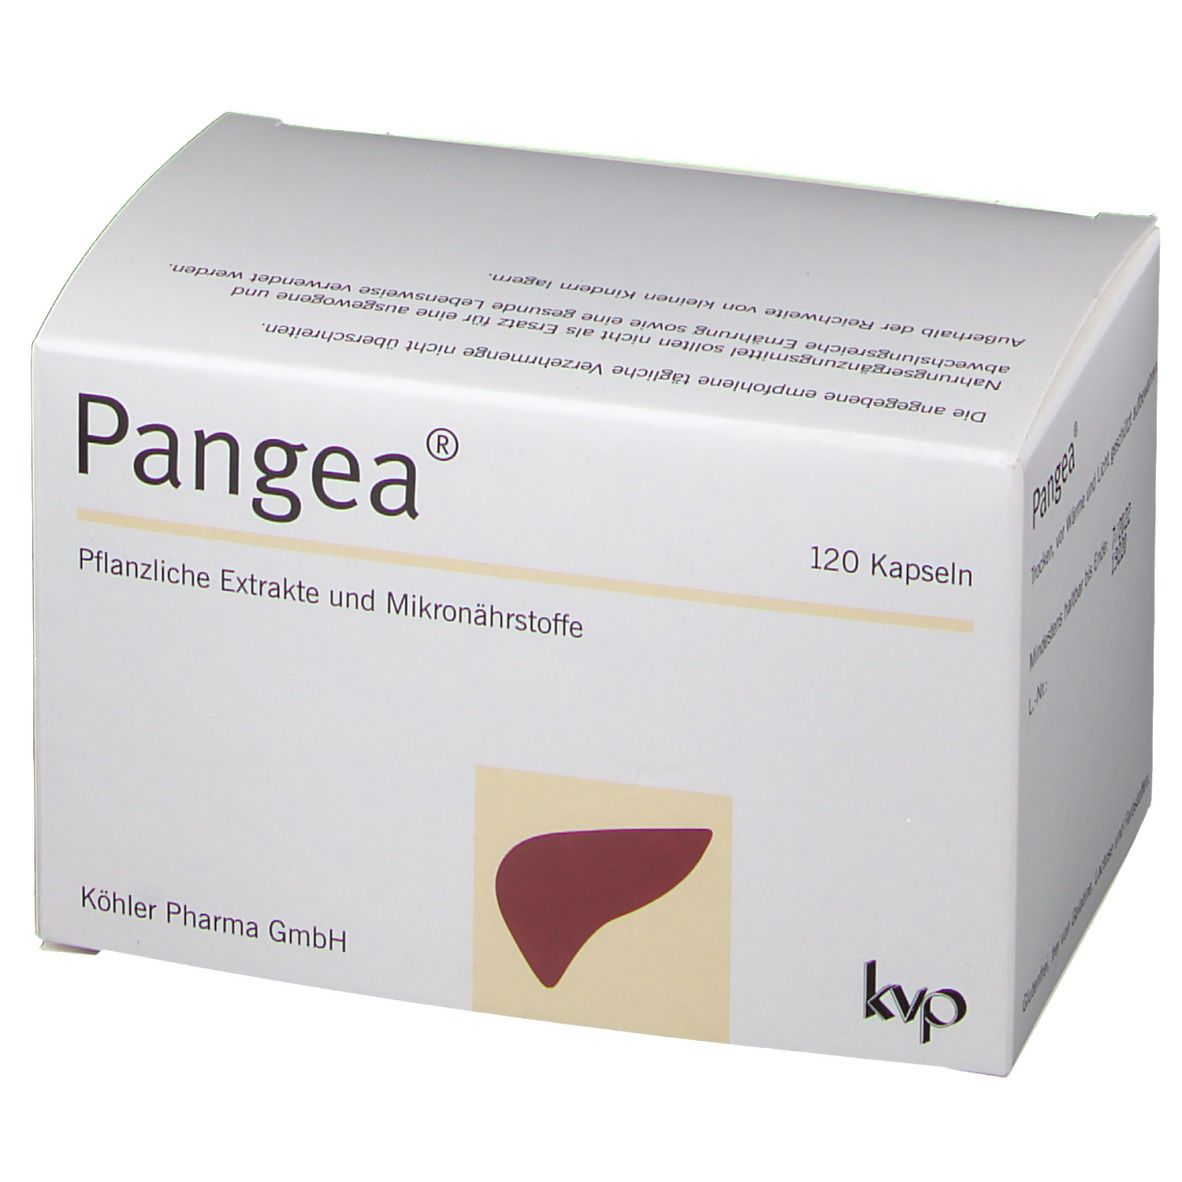 Pangea ® Kapseln